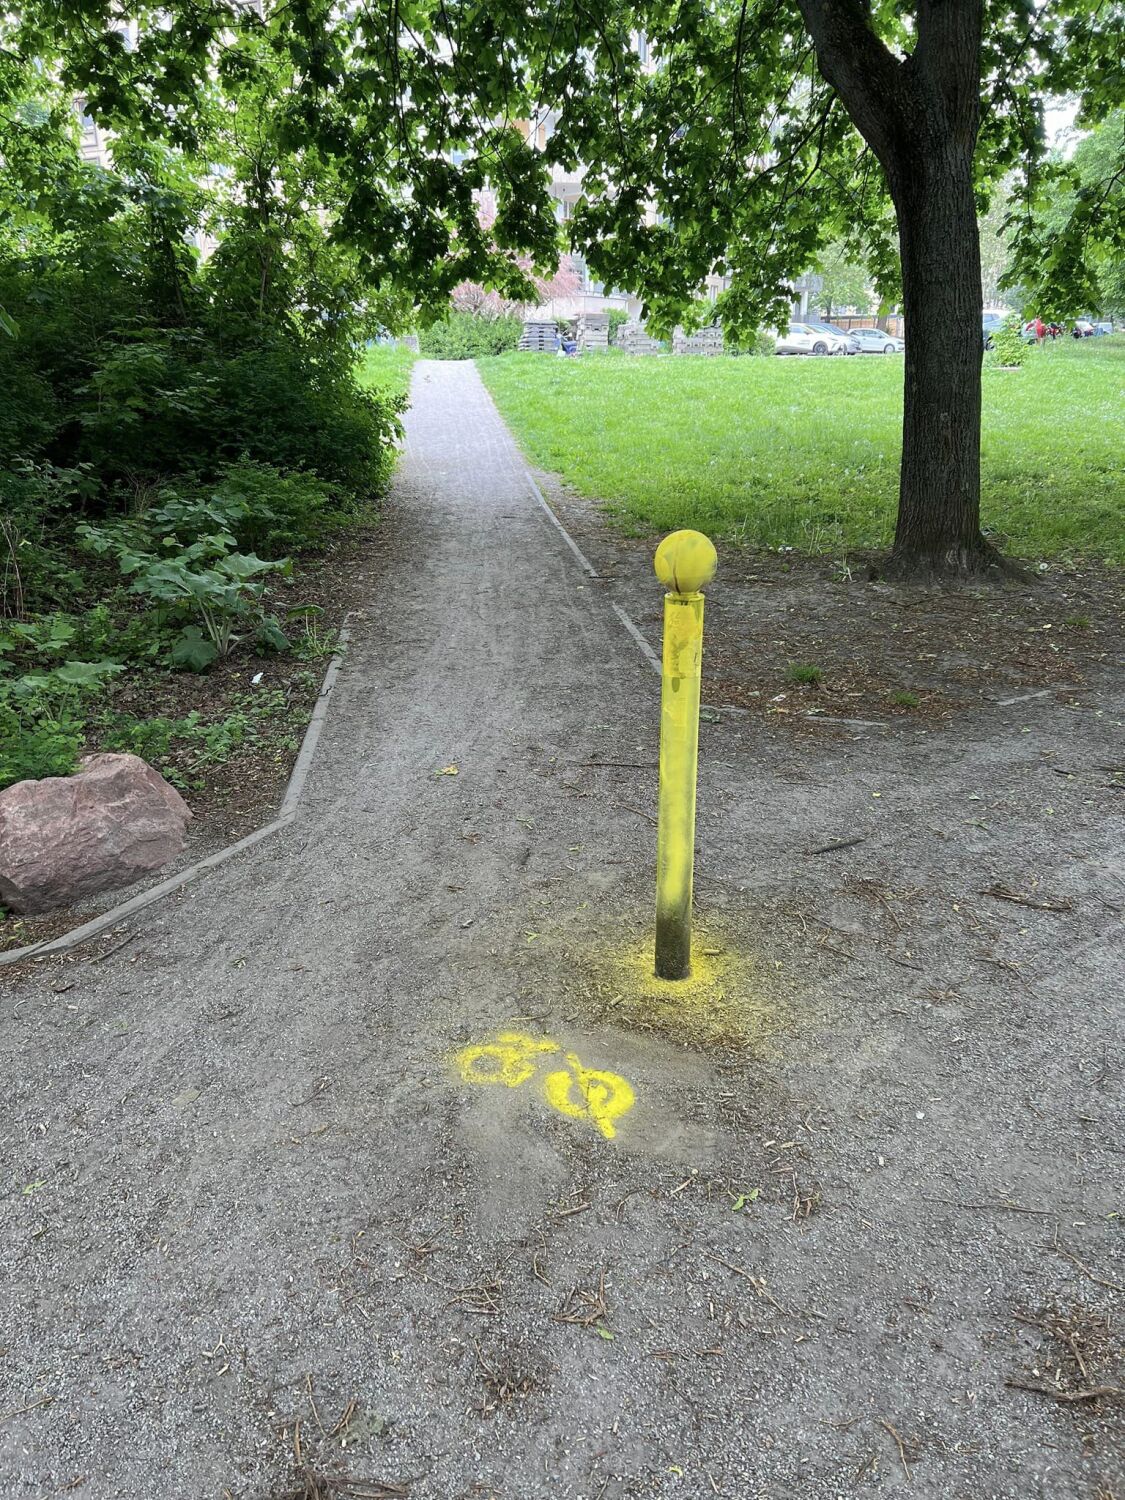 Auf einem Weg steht ein Poller. Der Poller wurde mit gelber Kreidespray besprüht, da er eine Unfallgefahr darstellt. Er unterscheidet sich farblich kaum von seiner Umgebung.